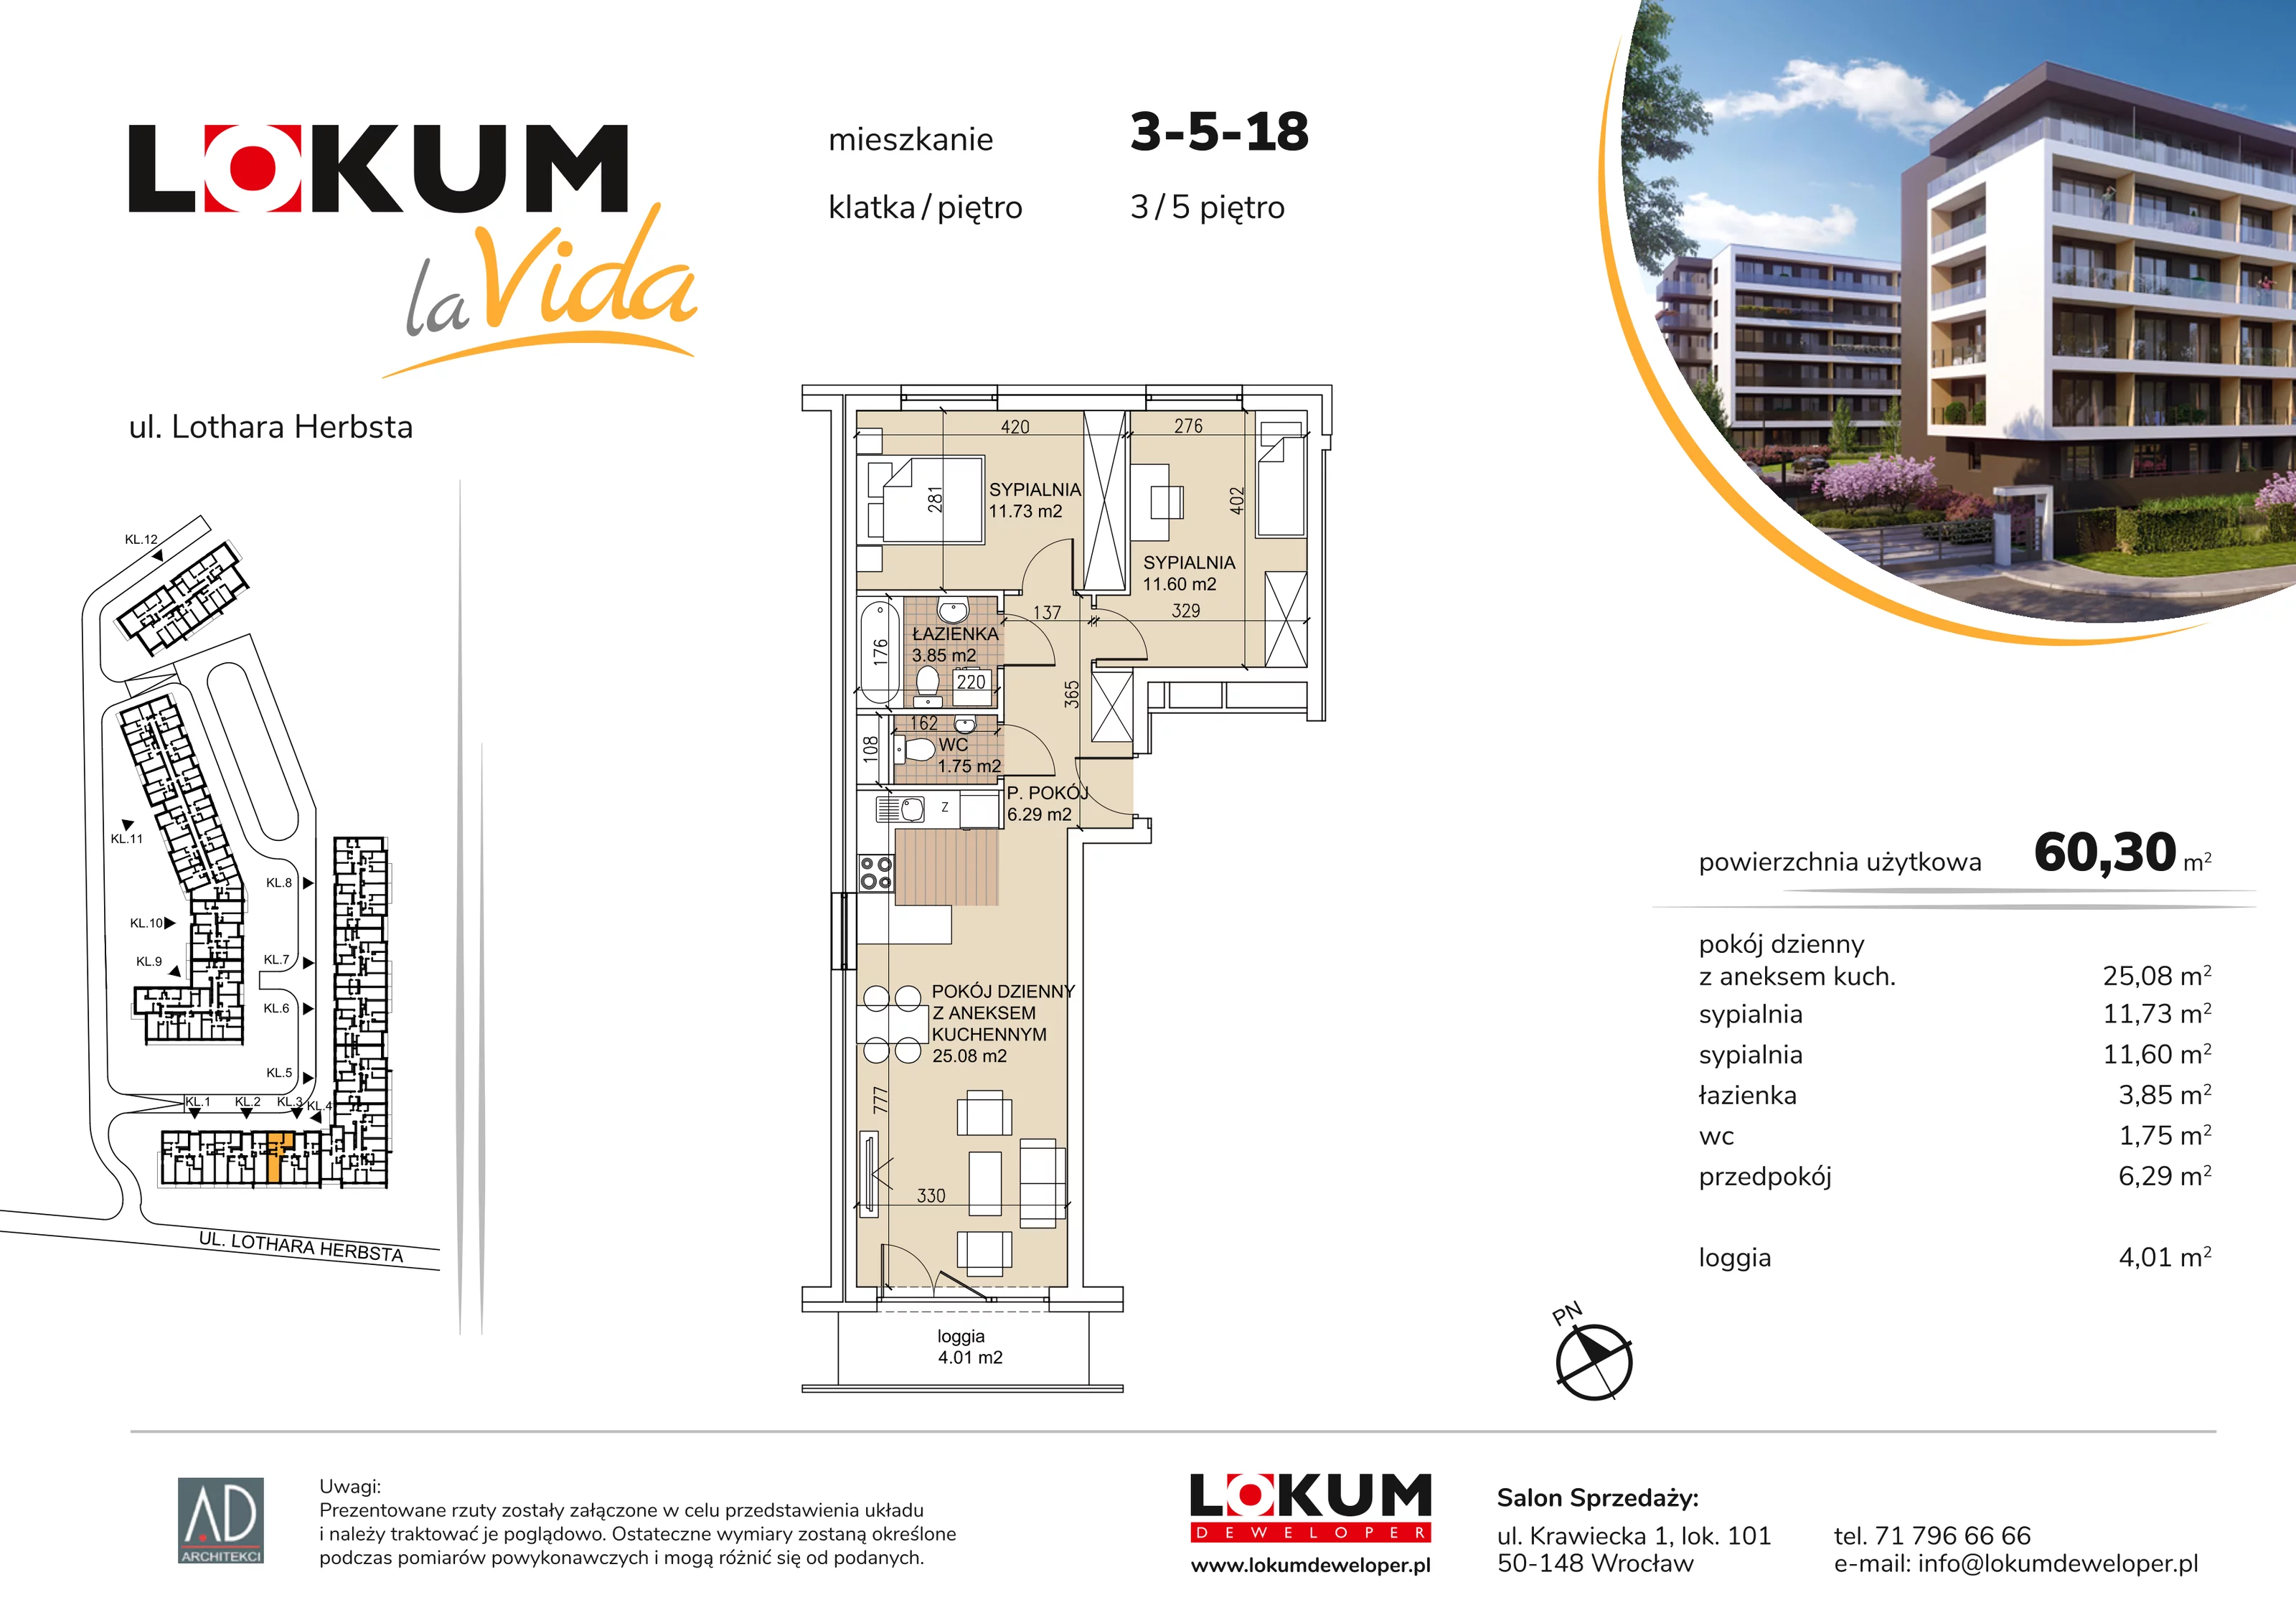 Mieszkanie 60,30 m², piętro 5, oferta nr 3-5-18, Lokum la Vida, Wrocław, Sołtysowice, ul. Lothara Herbsta